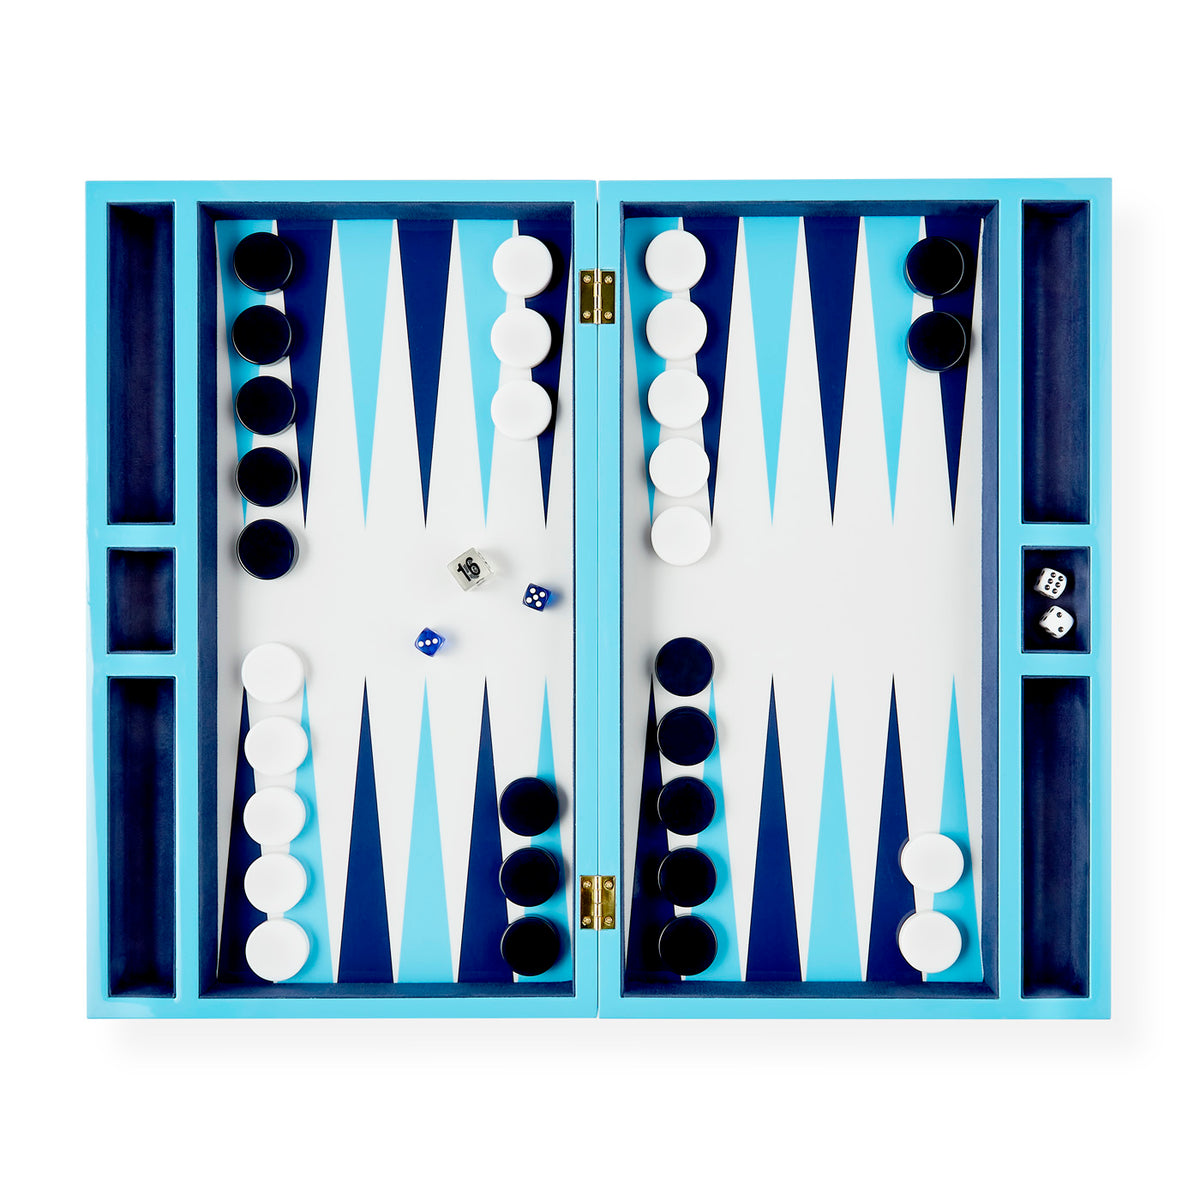 Kensington Backgammon Set by Jonathan Adler